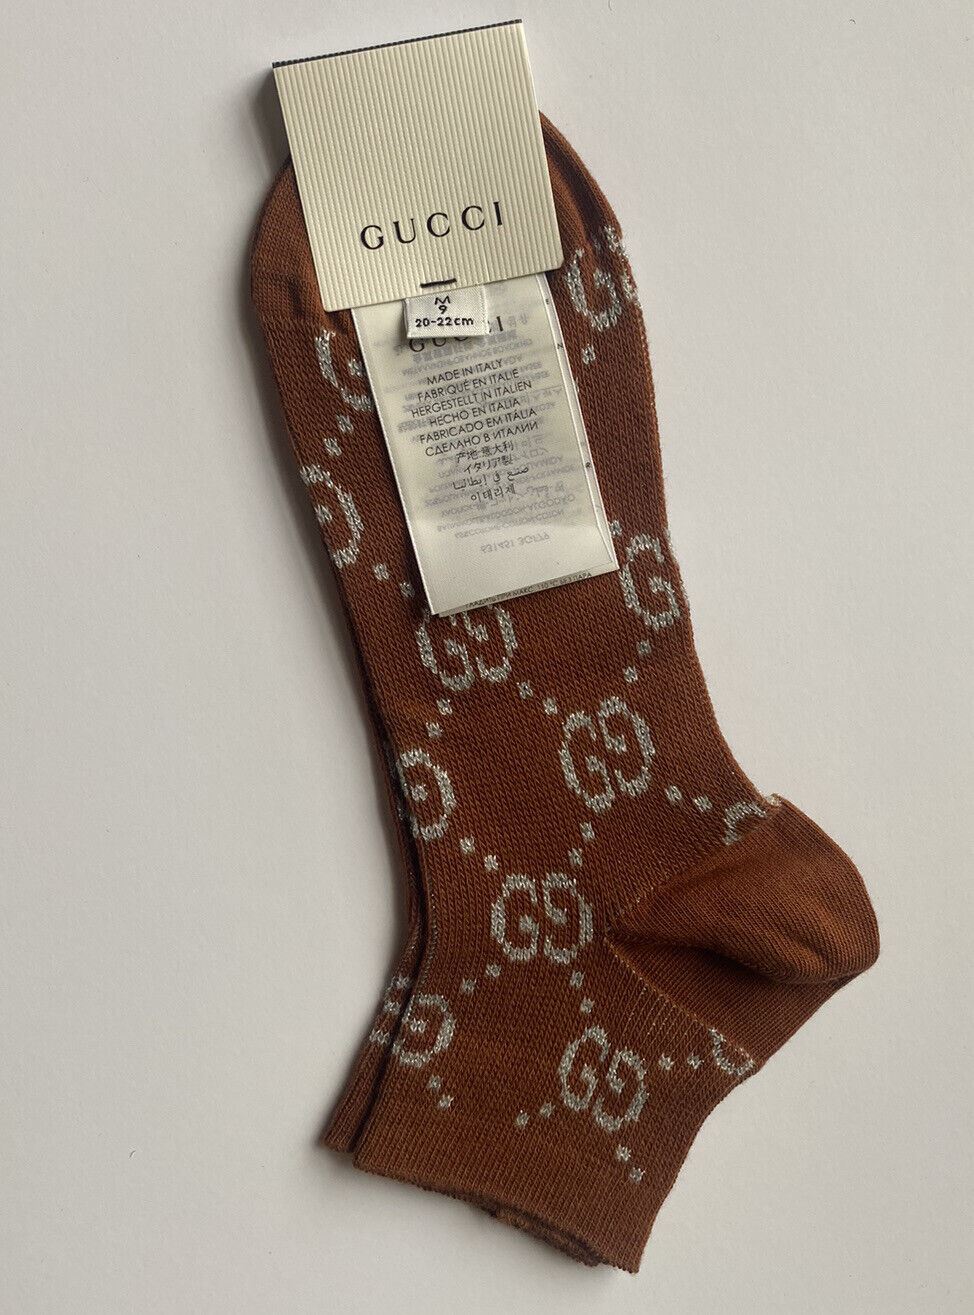 Neu mit Etikett: Gucci Mini Greek Interlocking GG Silber/Braun Socken Medium (Größe 9) 631451 